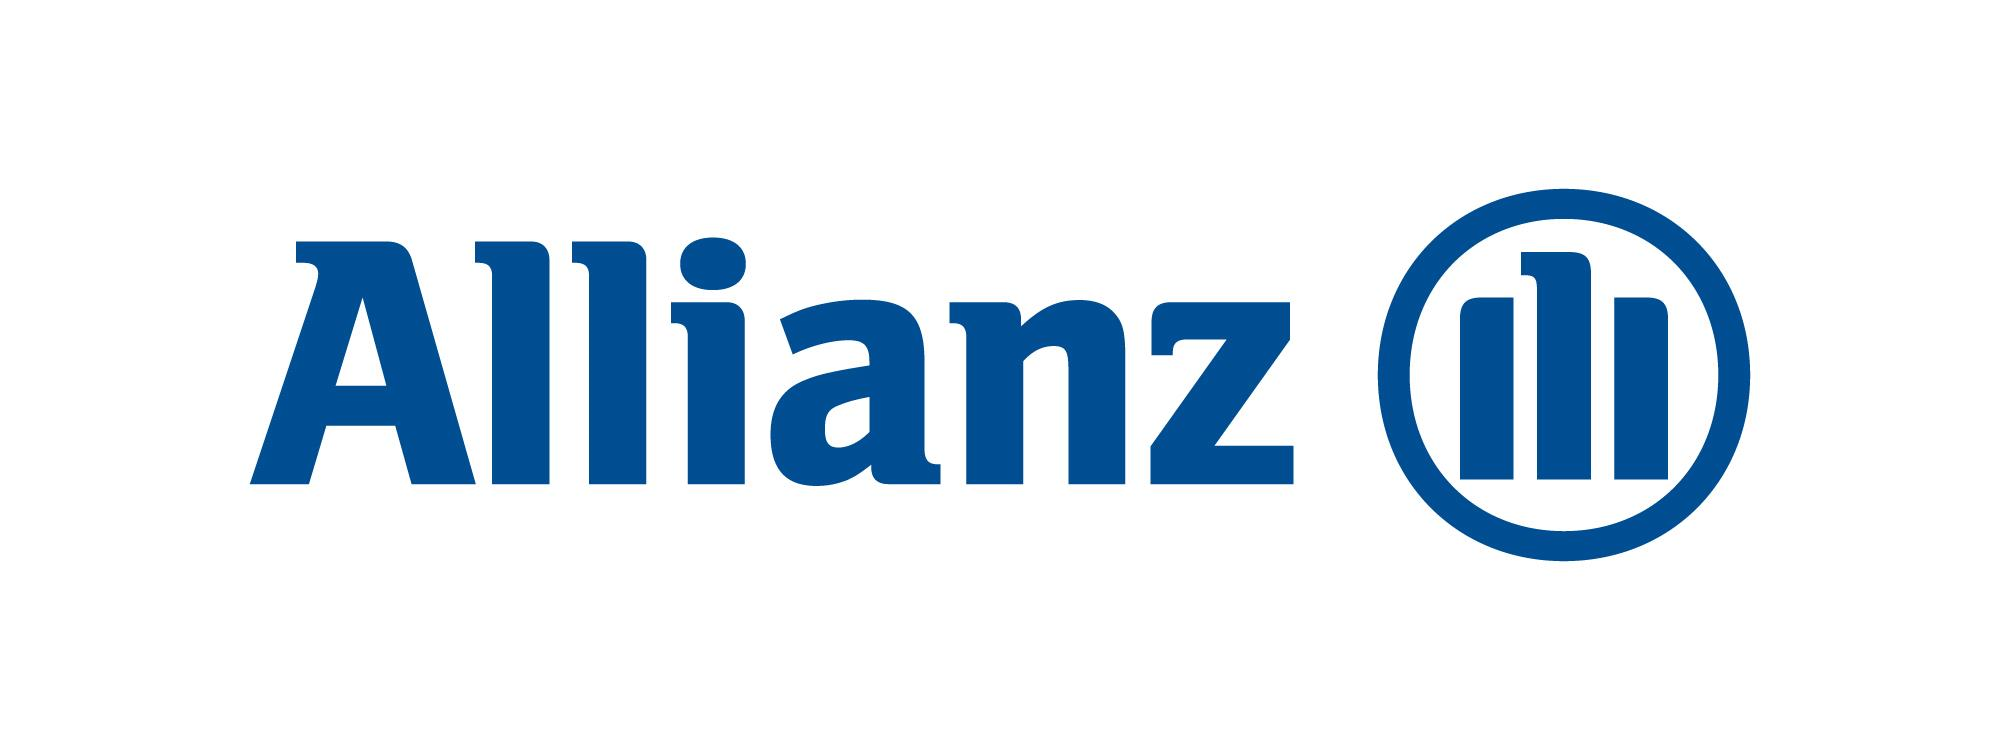 Kapitola 1 Popis řešeného problému 1.1 Představení zadavatelské společnosti Obrázek 1.1: Logo společnosti Allianz, a. s. Allianz pojišťovna, a. s. je nadnárodní pojišťovací společnost, která patří mezi nejznámější pojišťovny i v České republice.